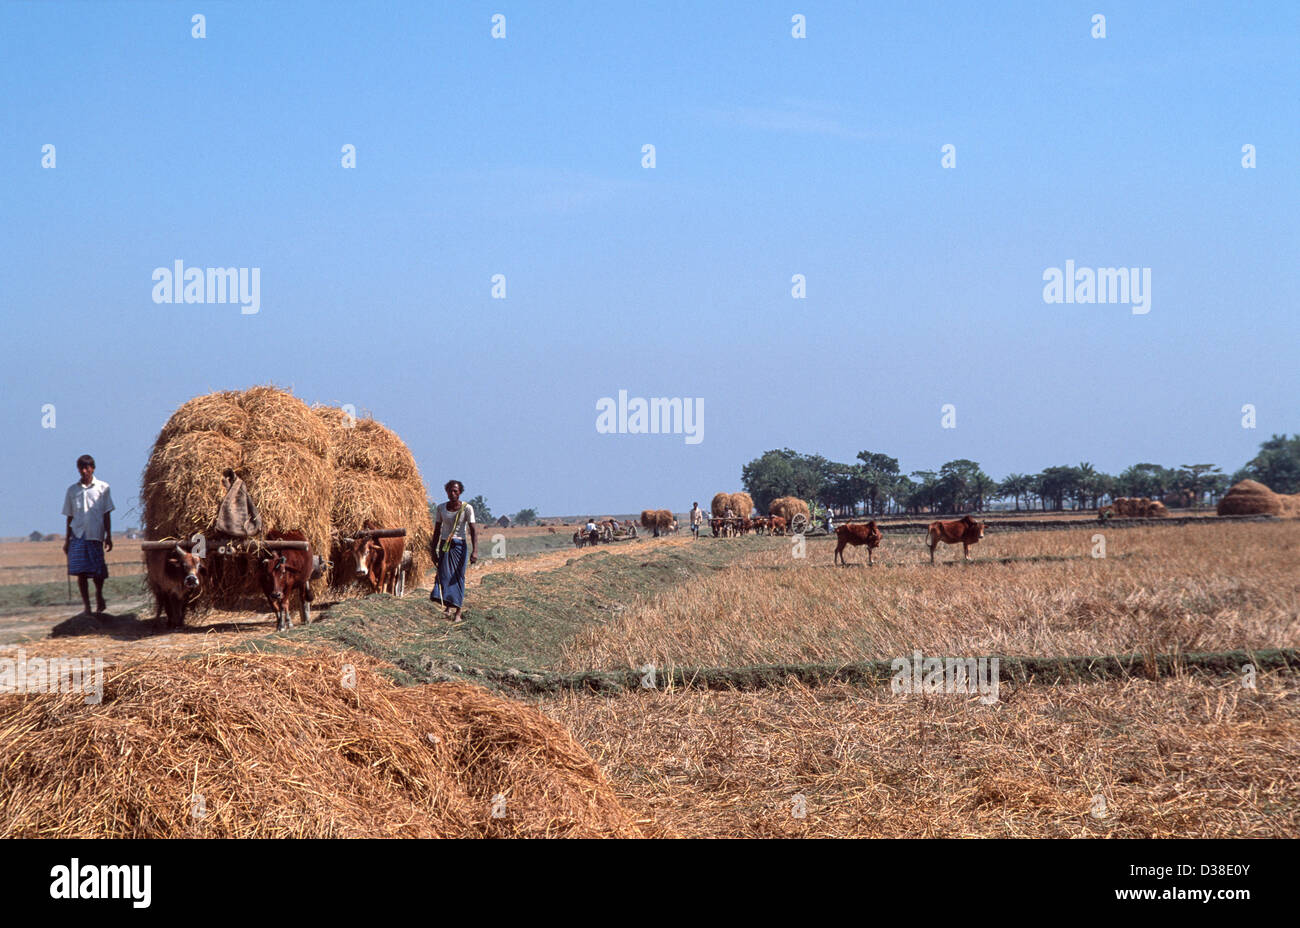 Les lahborers agricoles apportent le foin de riz récolté par charrette à boulonner, île Sandwip, baie du Bengale, Bangladesh Banque D'Images